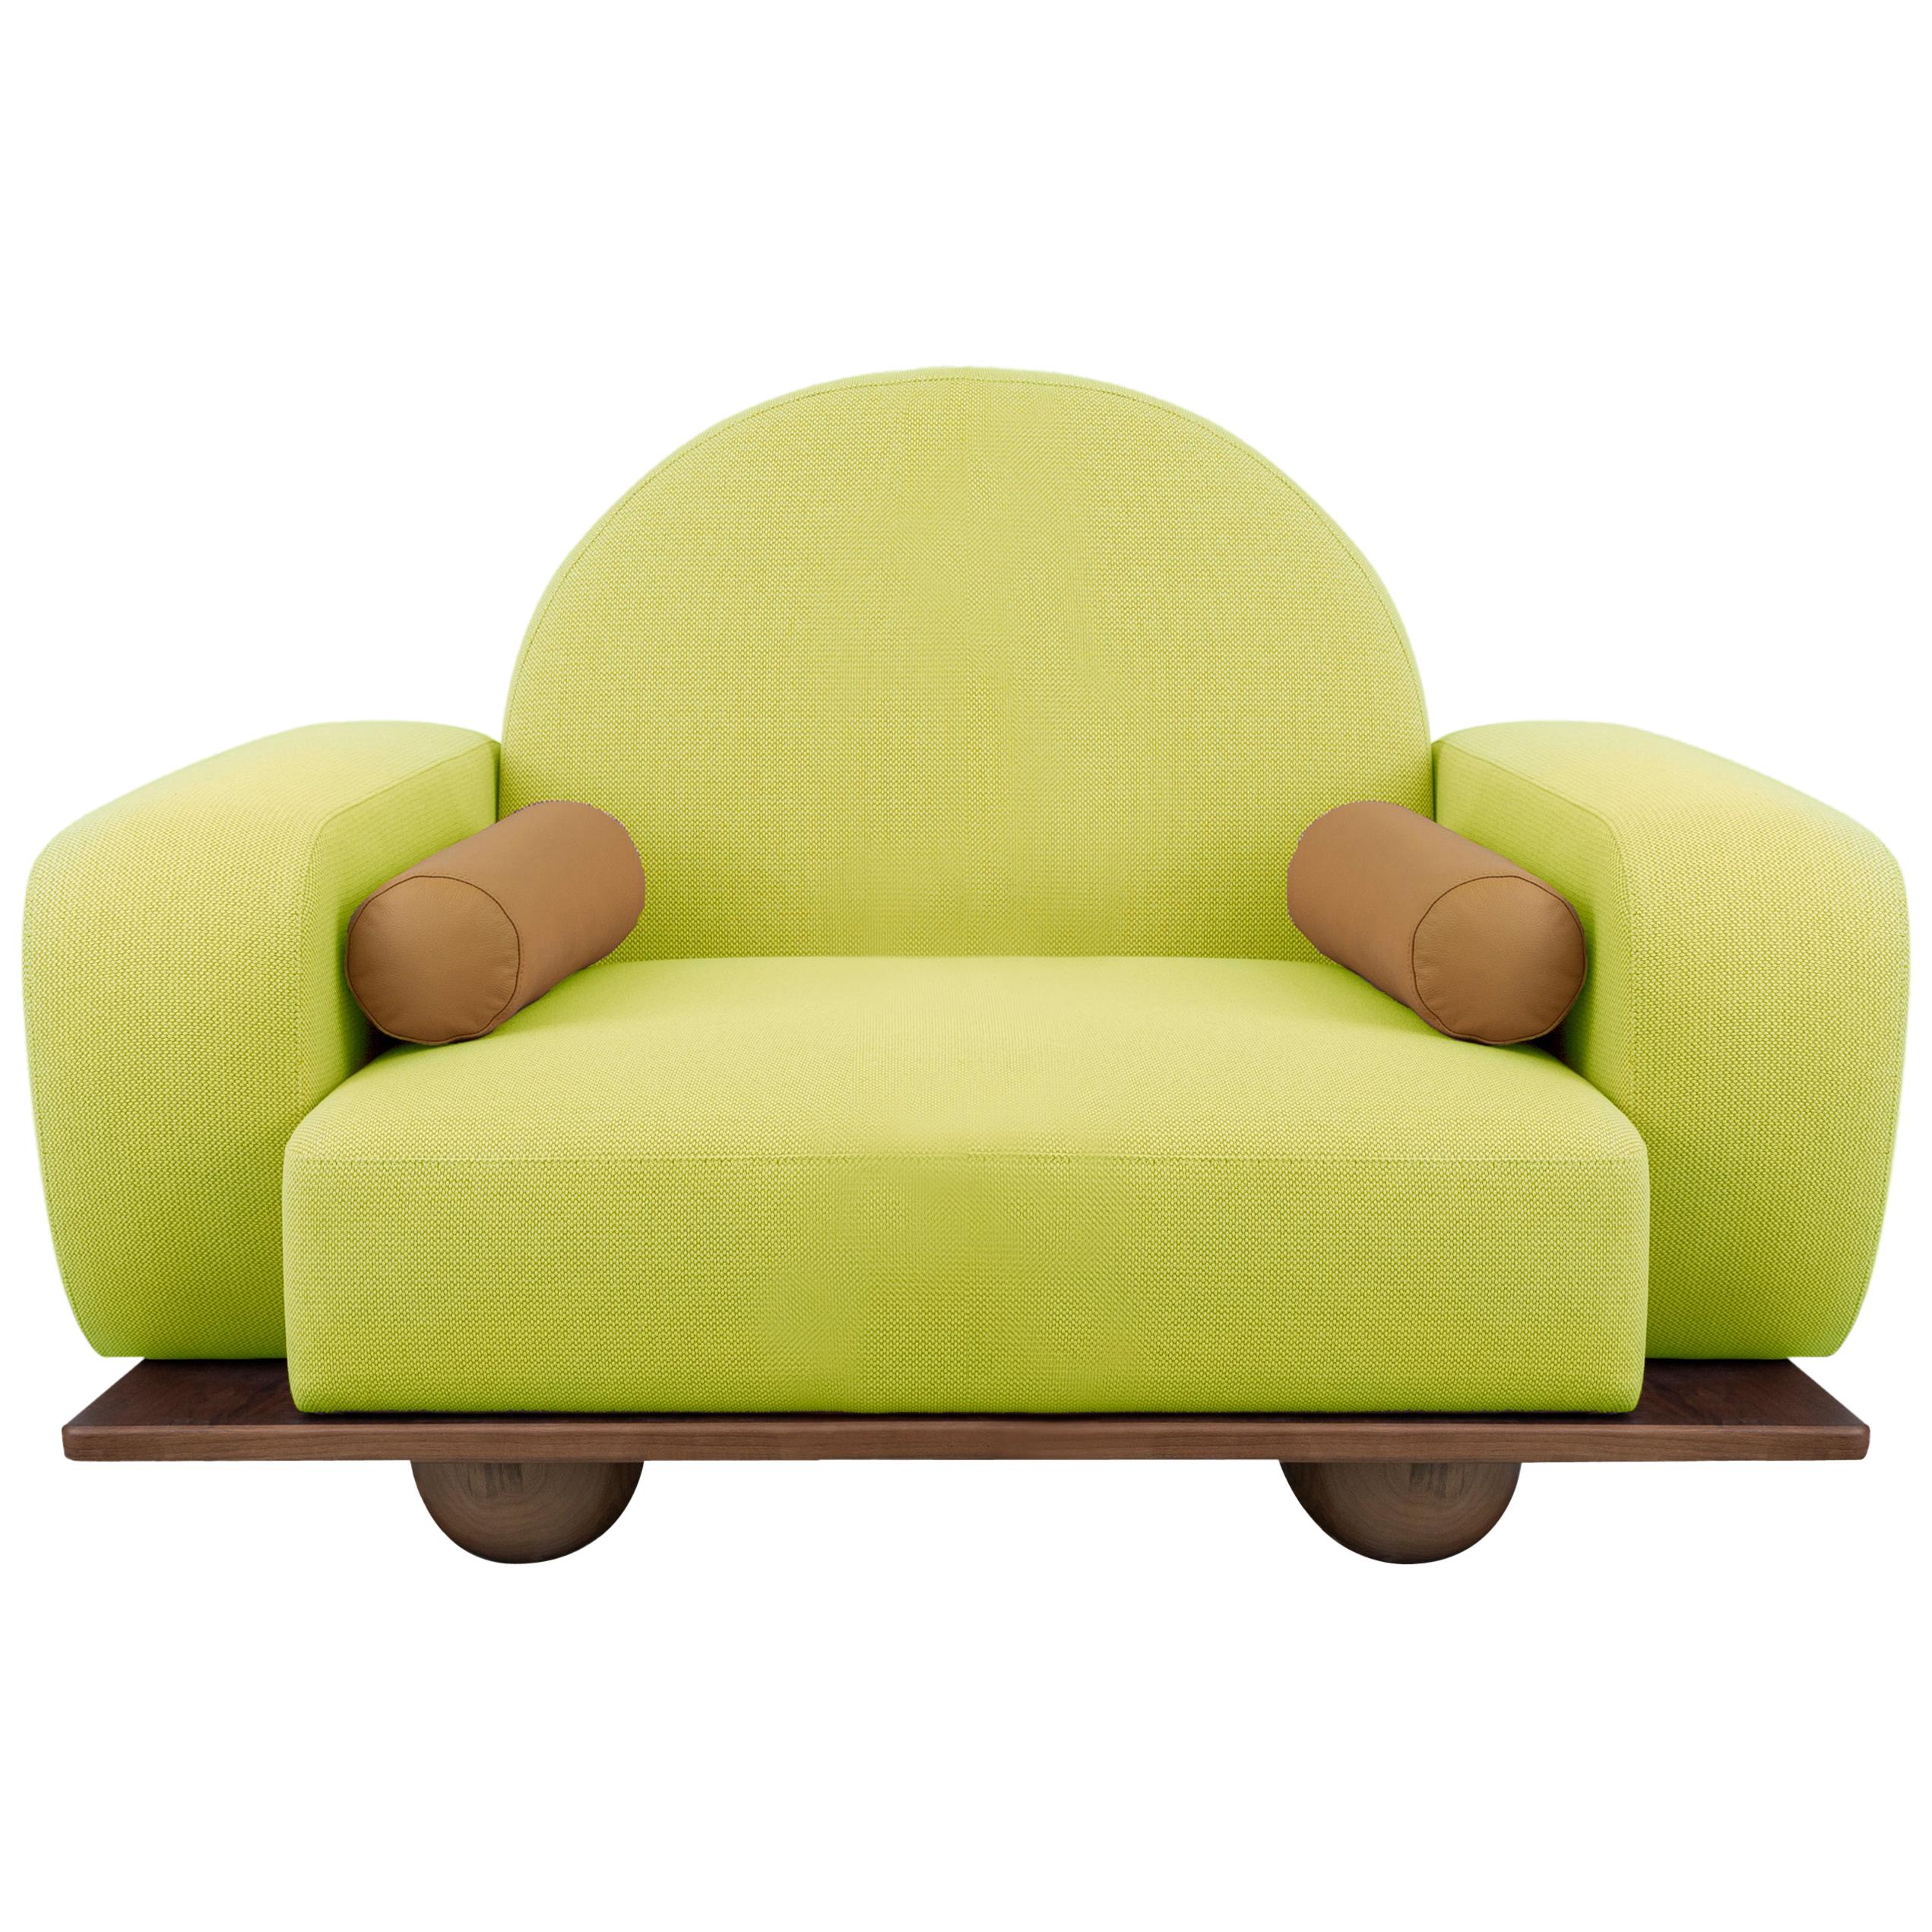 Le fauteuil Beice est conçu pour imiter la sensation d'être assis sur un nuage de barbe à papa. La combinaison de sa couleur, de son dossier en forme d'arc, de ses bords arrondis et de ses pieds sphériques en noyer crée un design rêveur et tendre.